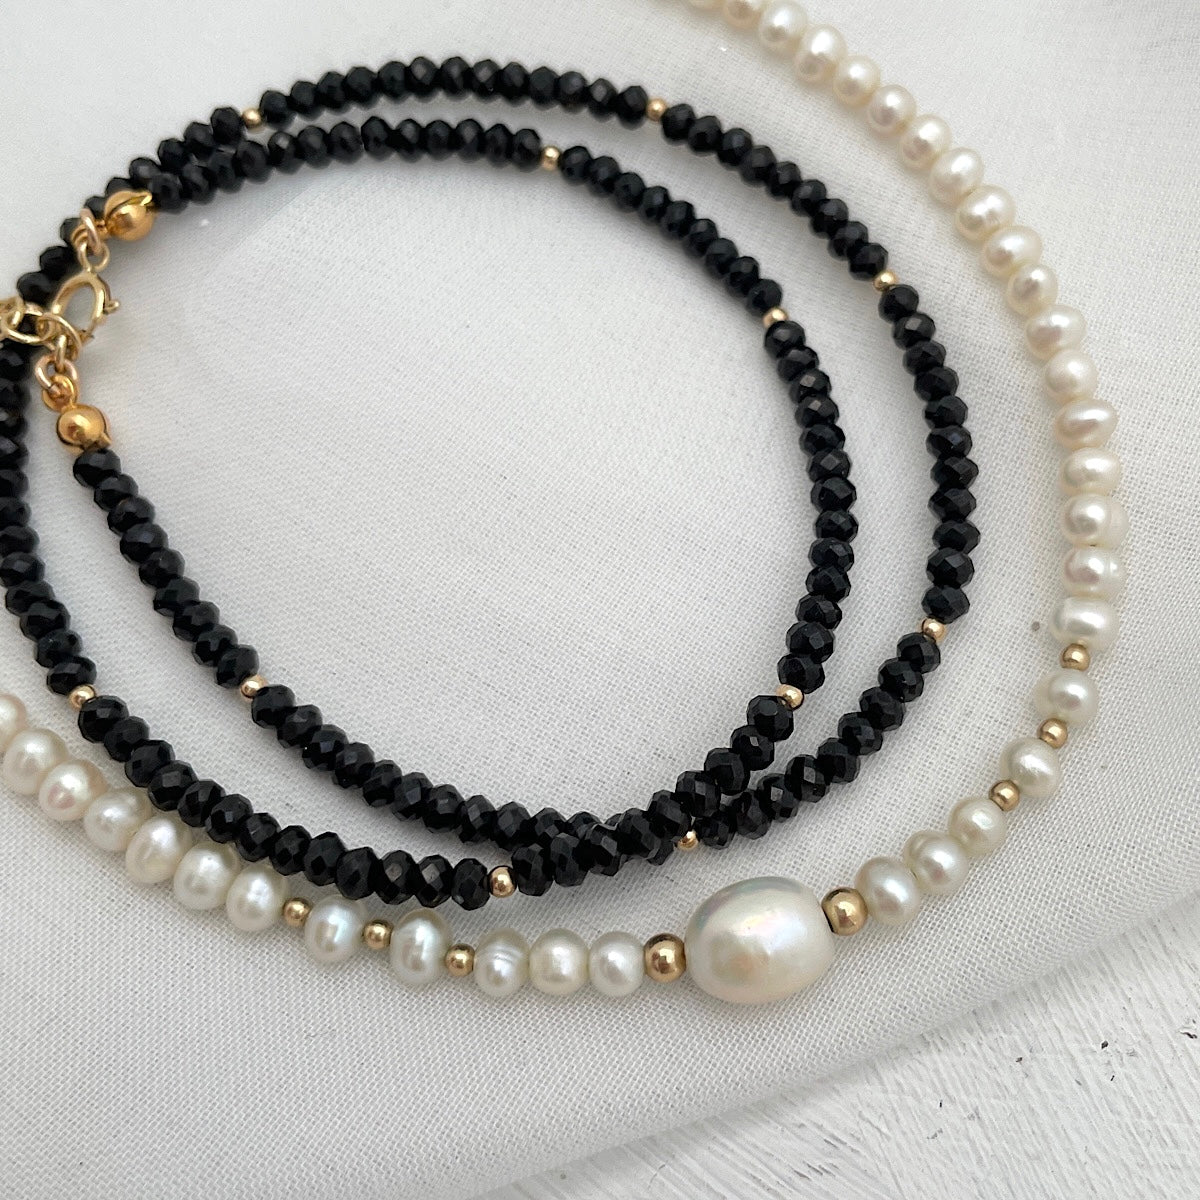 La Perla Baroque Pearl Choker Necklace